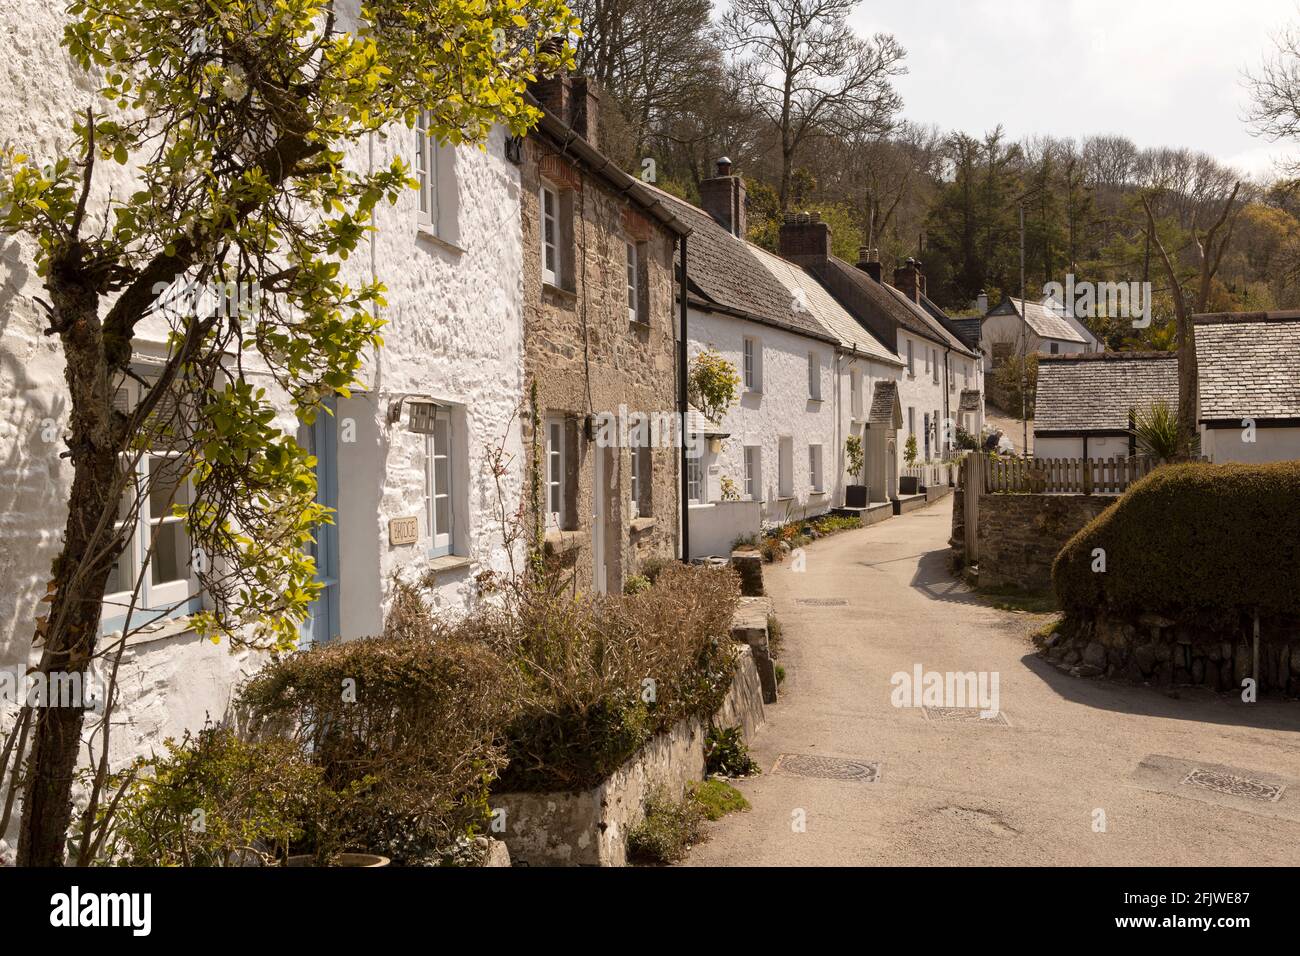 Village de Helford, Cornwall, Royaume-Uni Banque D'Images